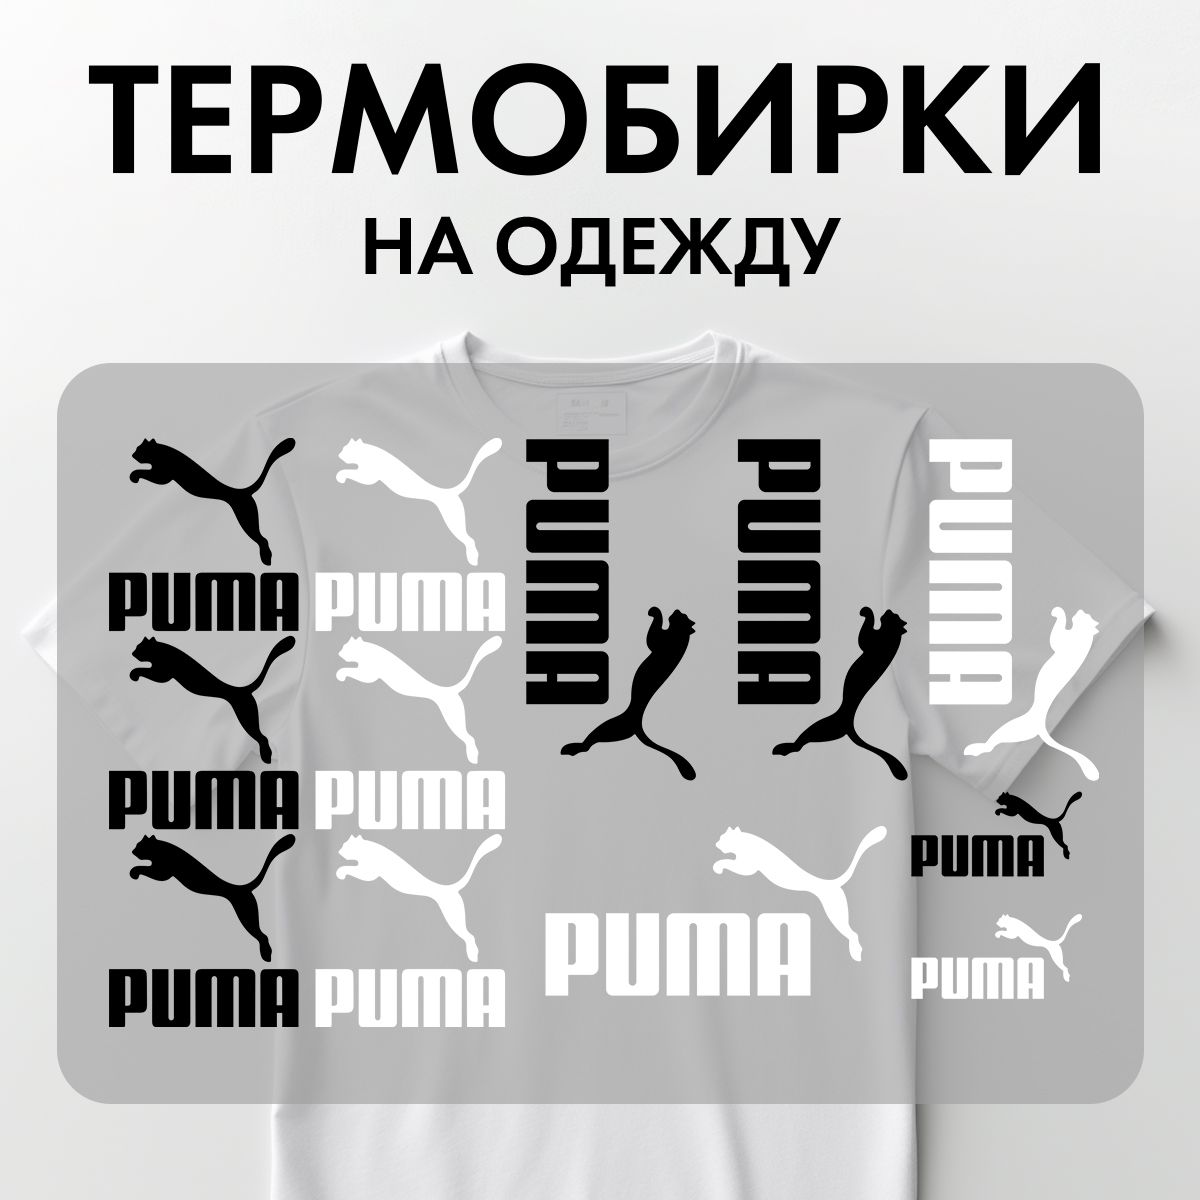 Термонаклейки Rekoy TB-LOGO Pum на одежду, логотип, надписи